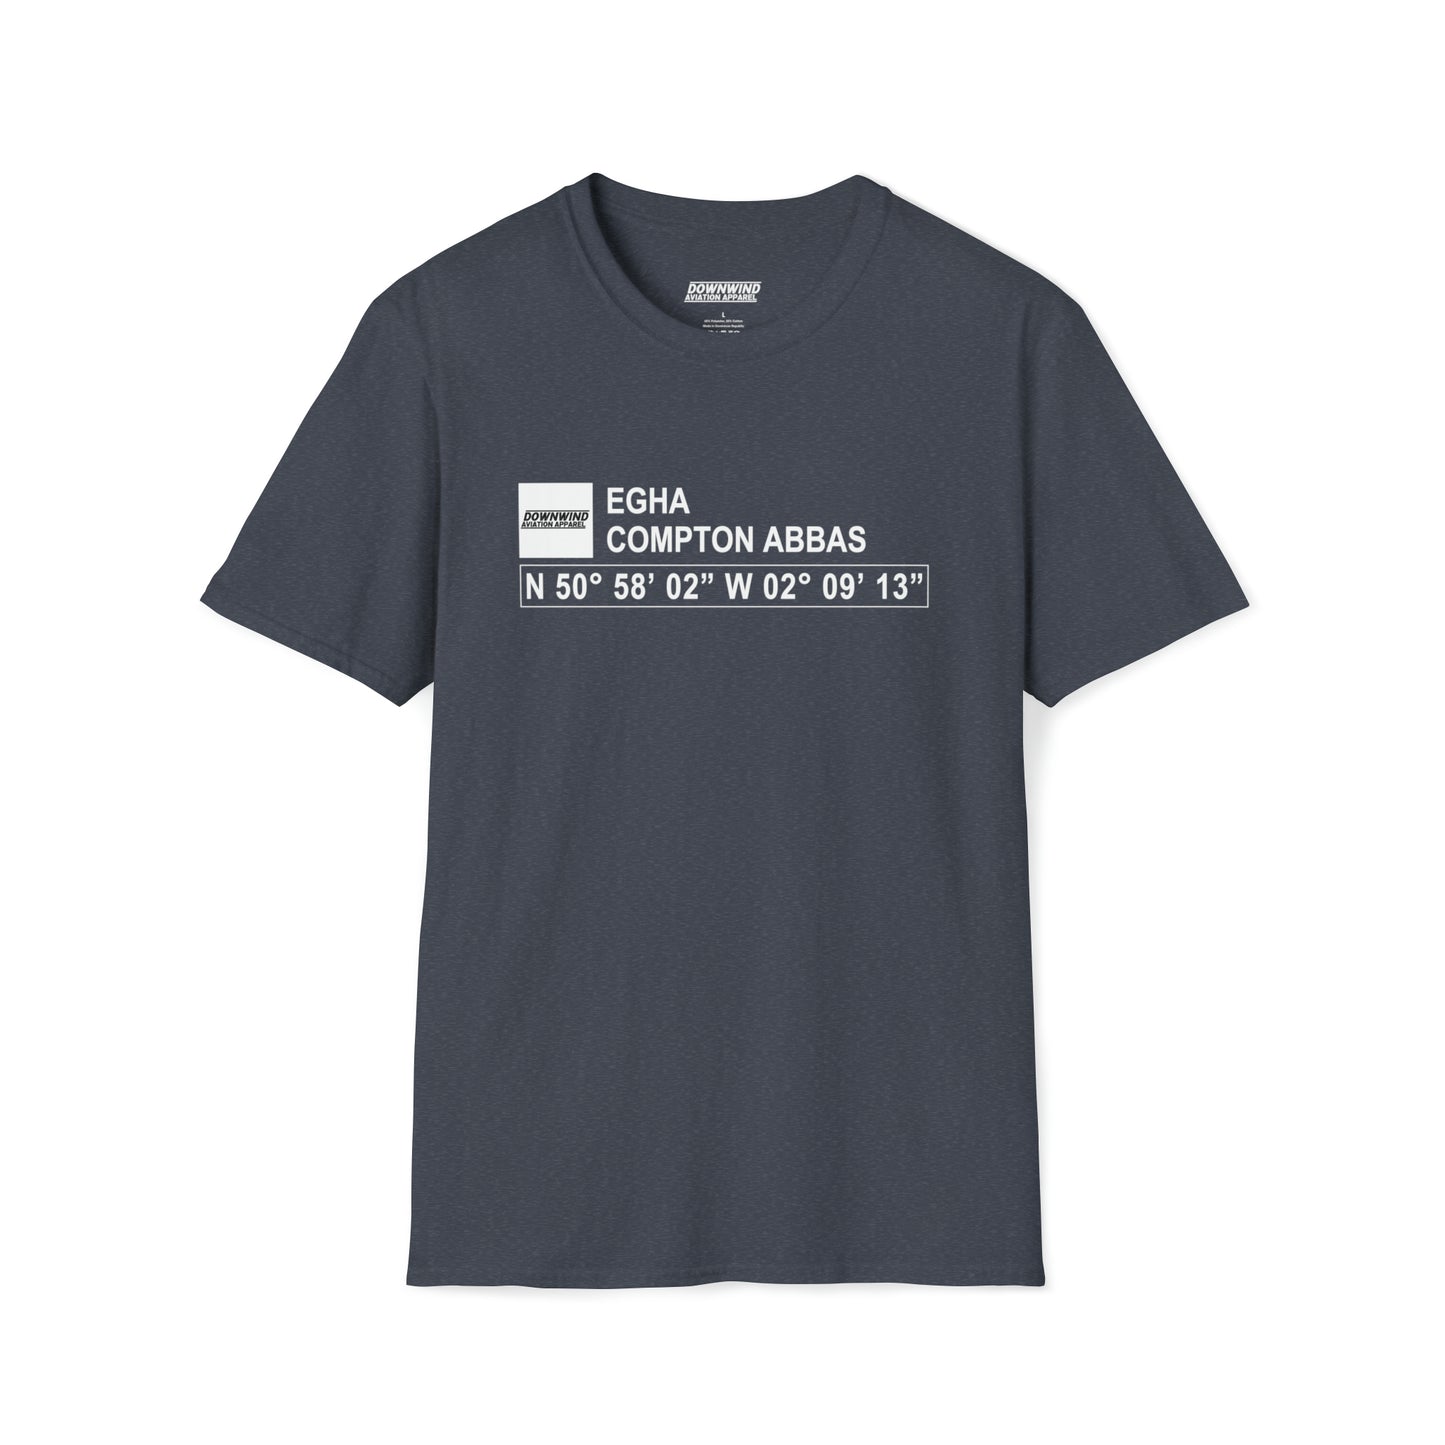 EGHA / Compton Abbas T-Shirt